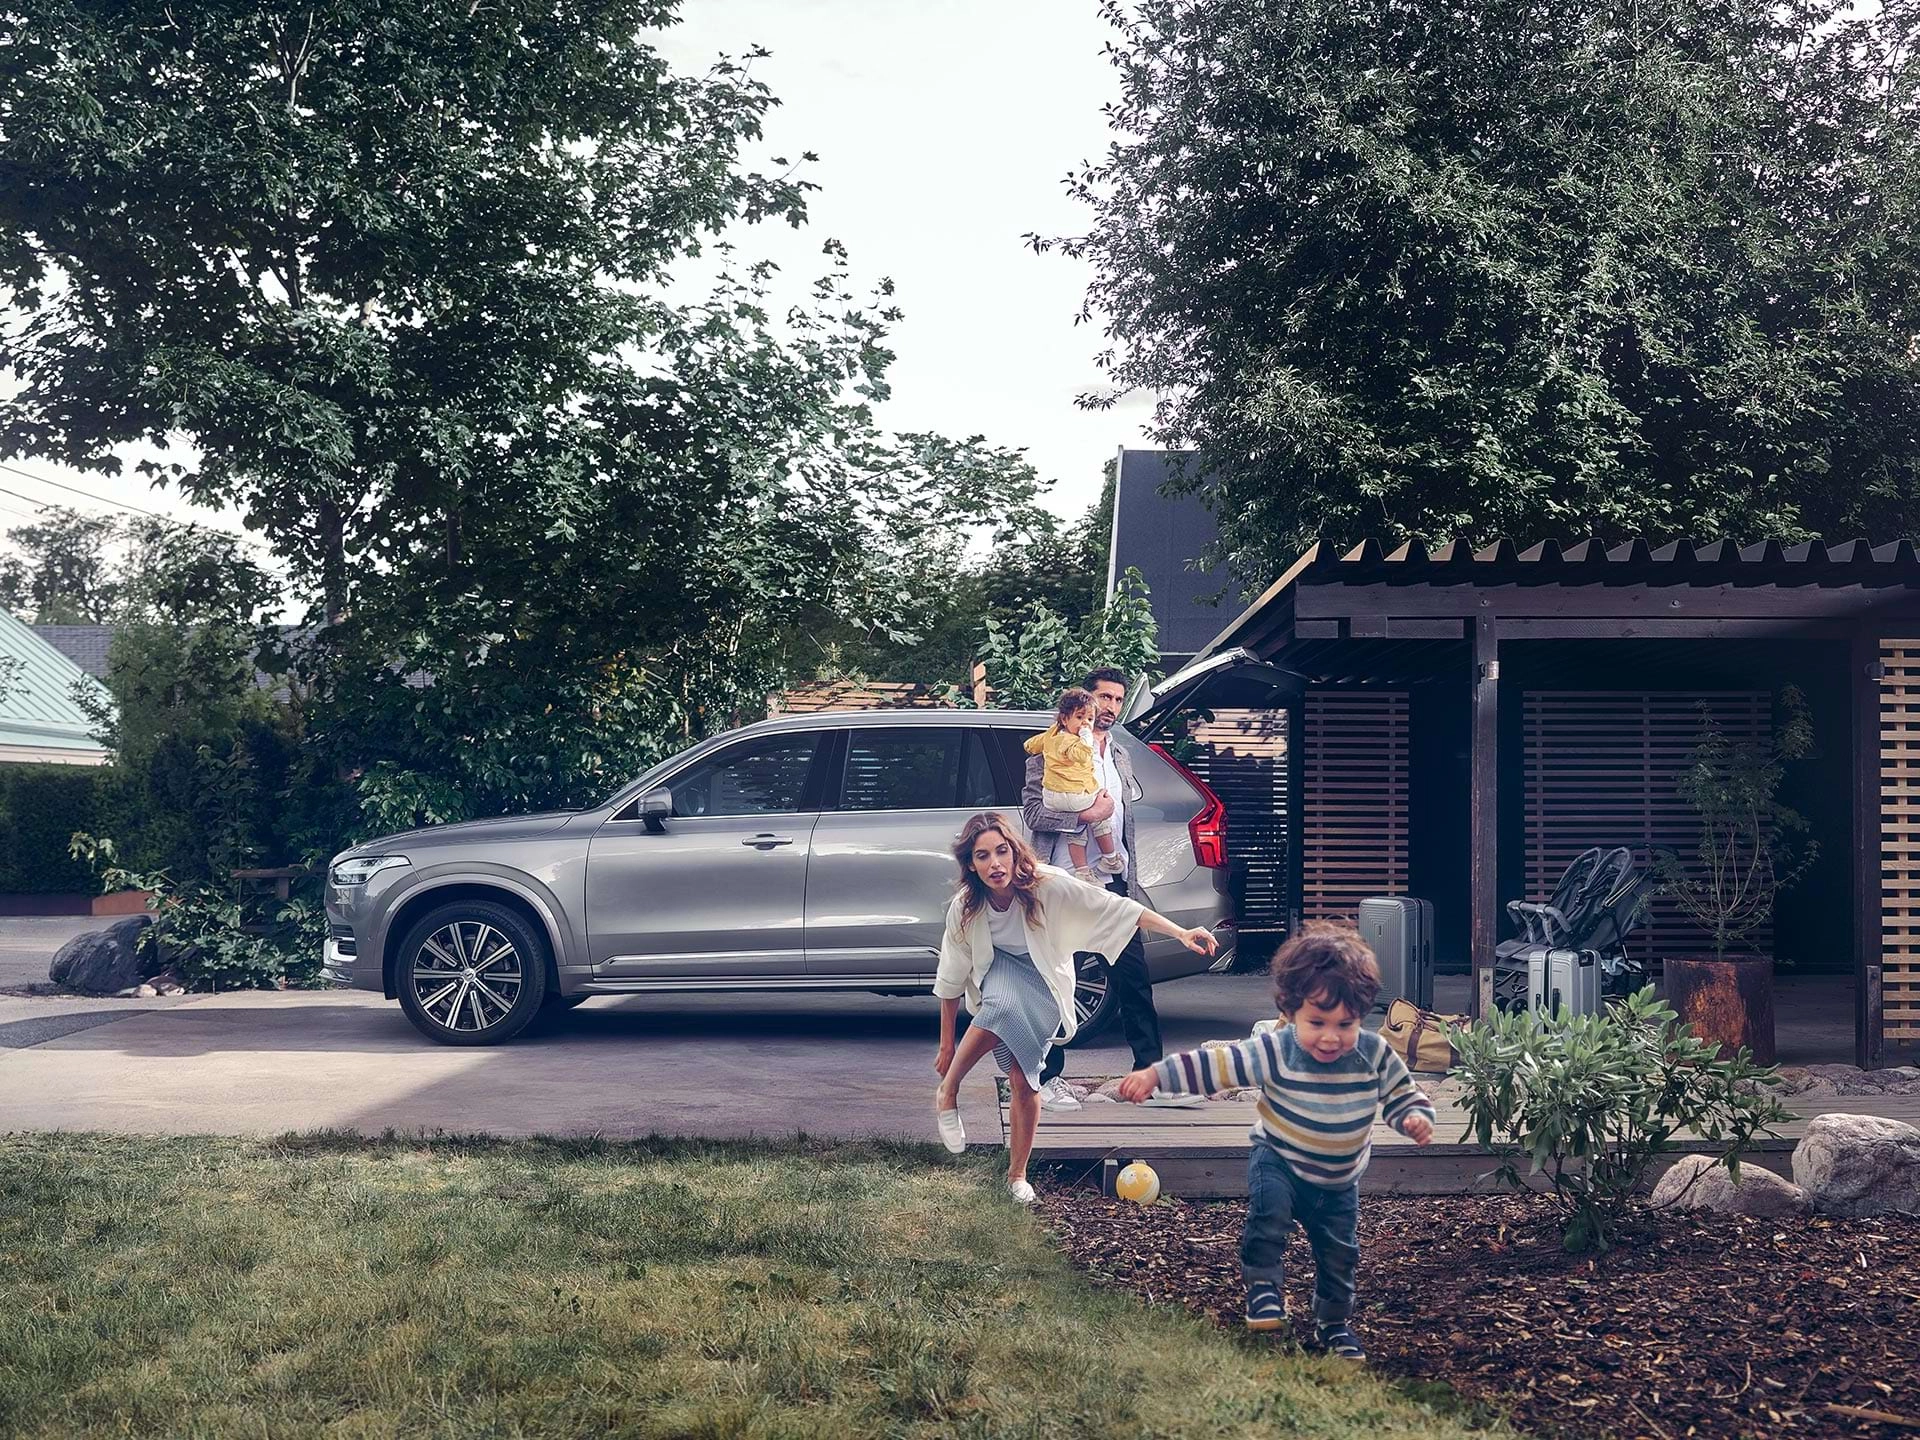 住在郊区的家庭准备驾驶着他们的沃尔沃 SUV 出行，孩子跑着穿过院子，母亲在身后追逐。